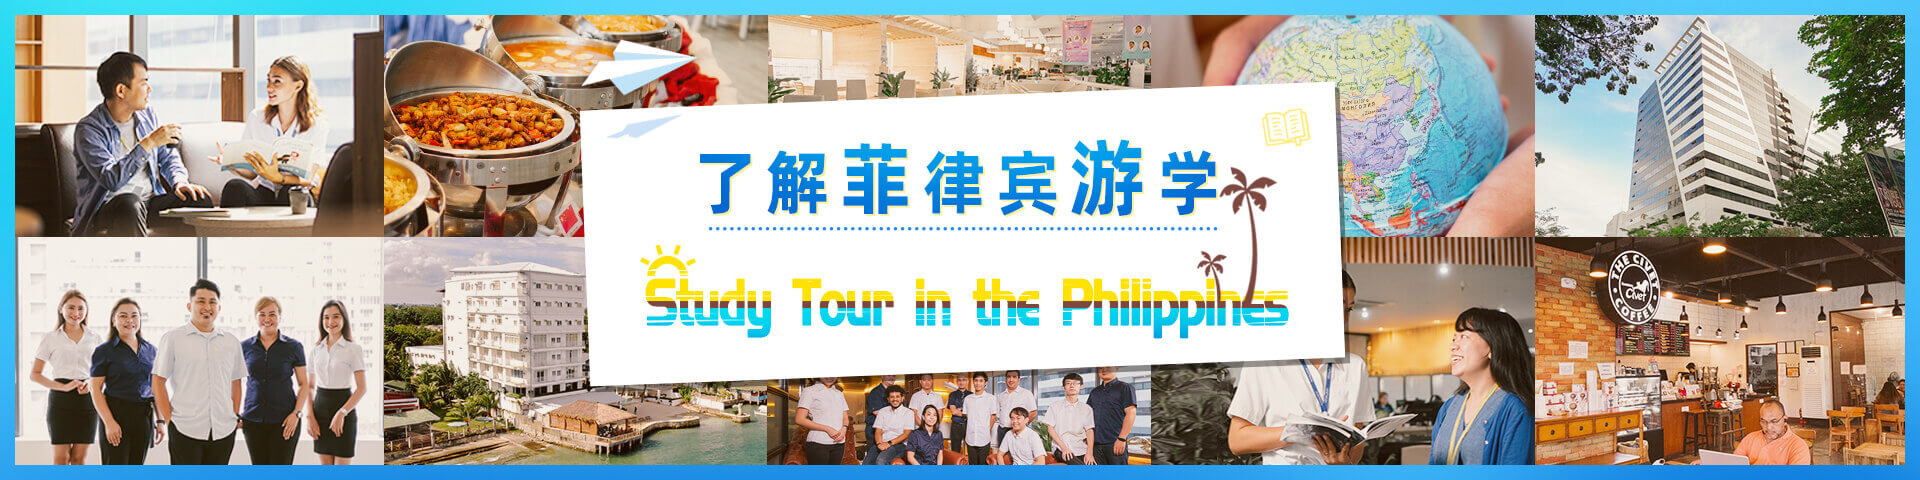 菲律宾游学 | 菲律宾游学生活分享-认识菲律宾游学-菲律宾语言学校-菲律宾游学机构-在菲言菲